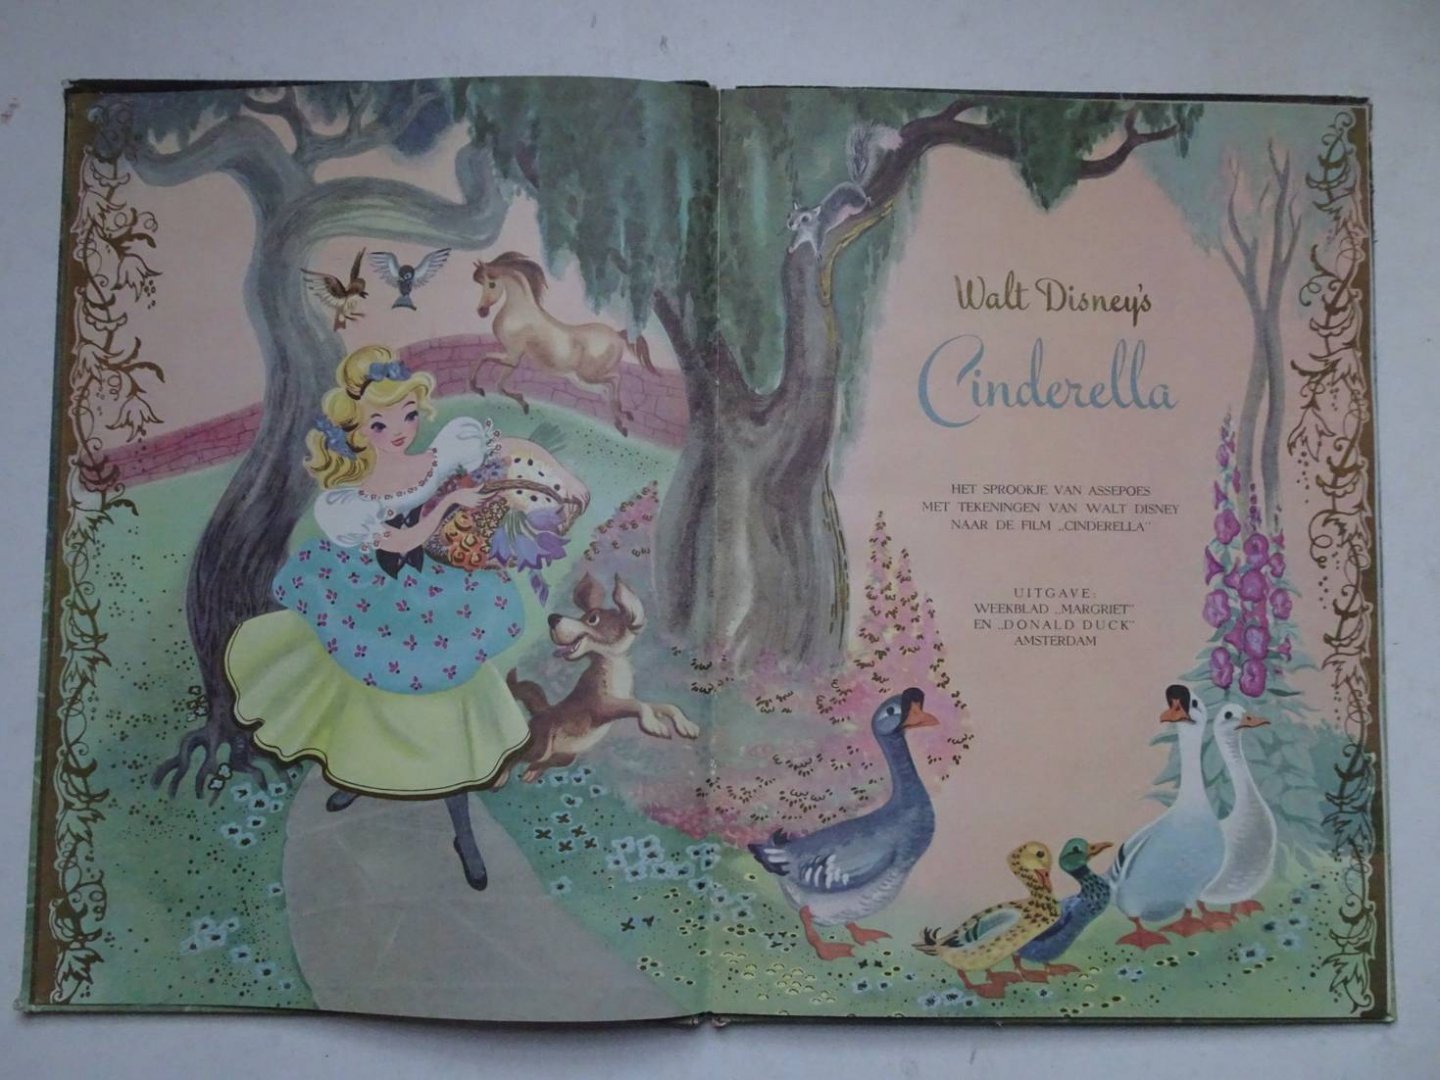 Disney, Walt. - Walt Disney's Cinderella. Het sprookje van Assepoes met tekeningen van Walt Disney naar de film "Cinderella". Een gouden "Margriet" boek.